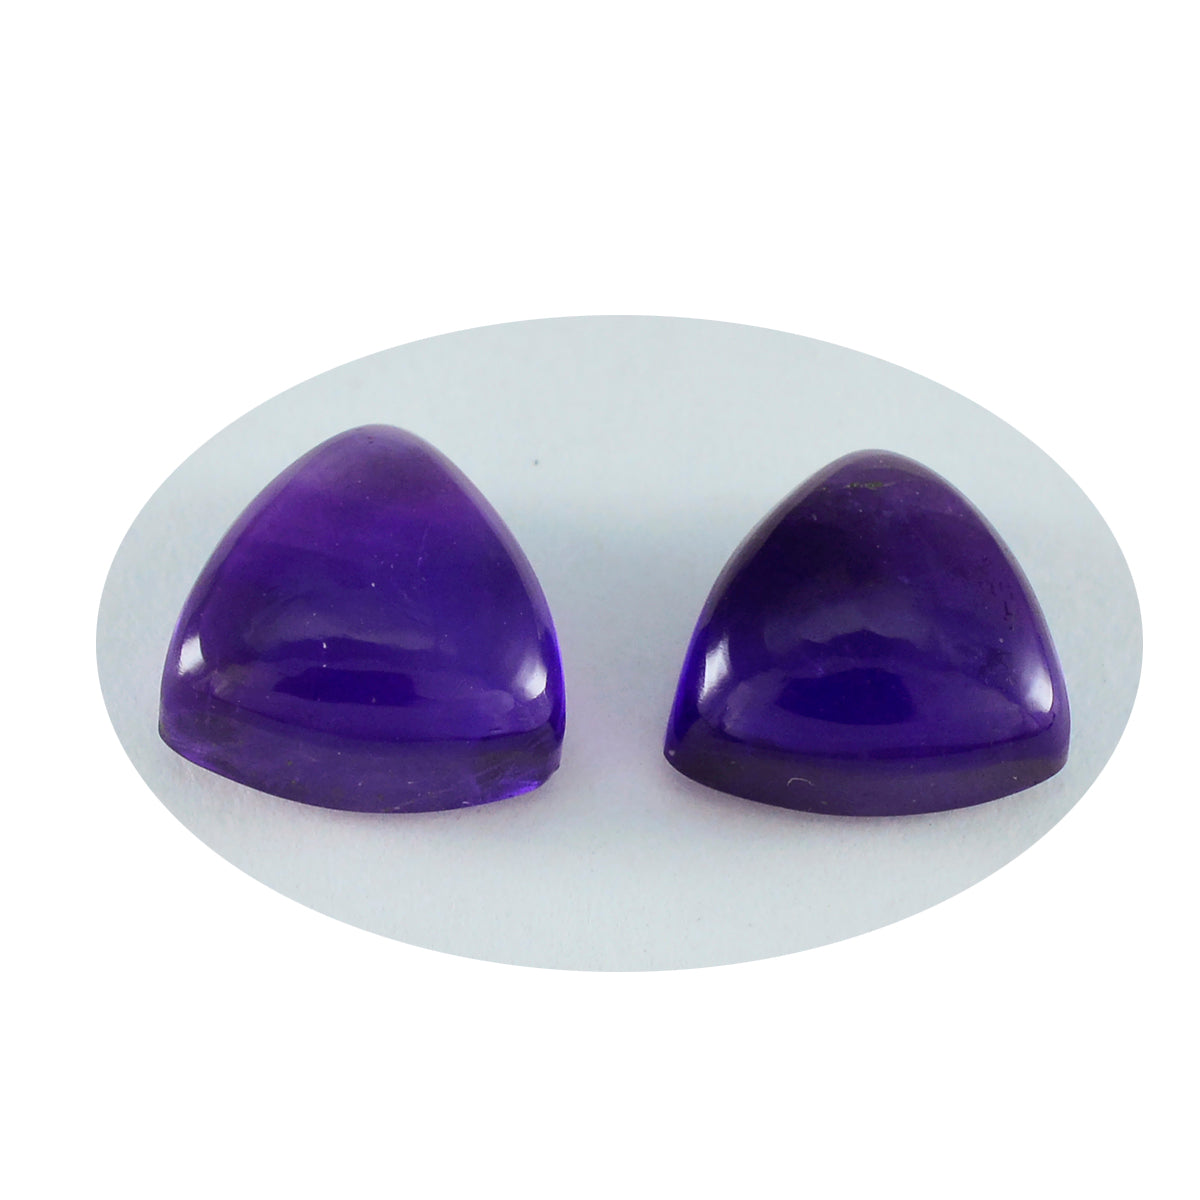 riyogems 1 шт., фиолетовый аметист, кабошон 7x7 мм, форма триллиона, поразительное качество, свободный камень